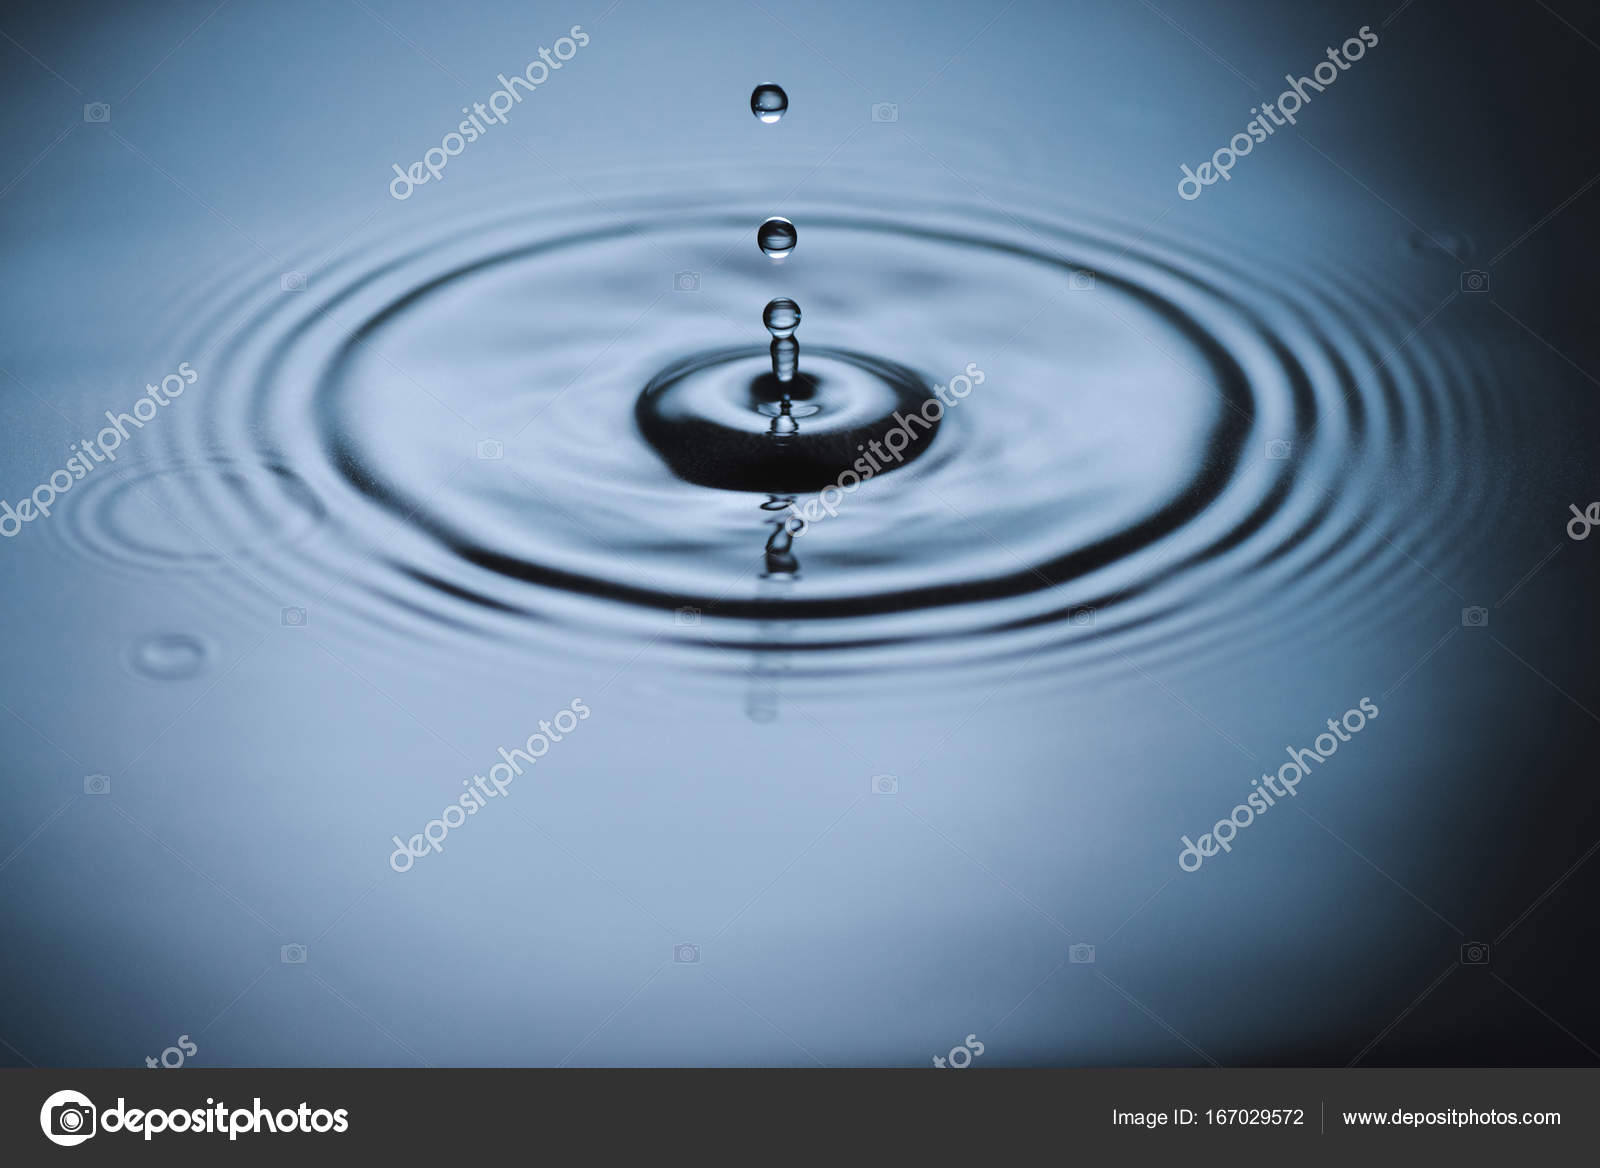 Splash on water surface Stock Photo by ©VadimVasenin 167029572